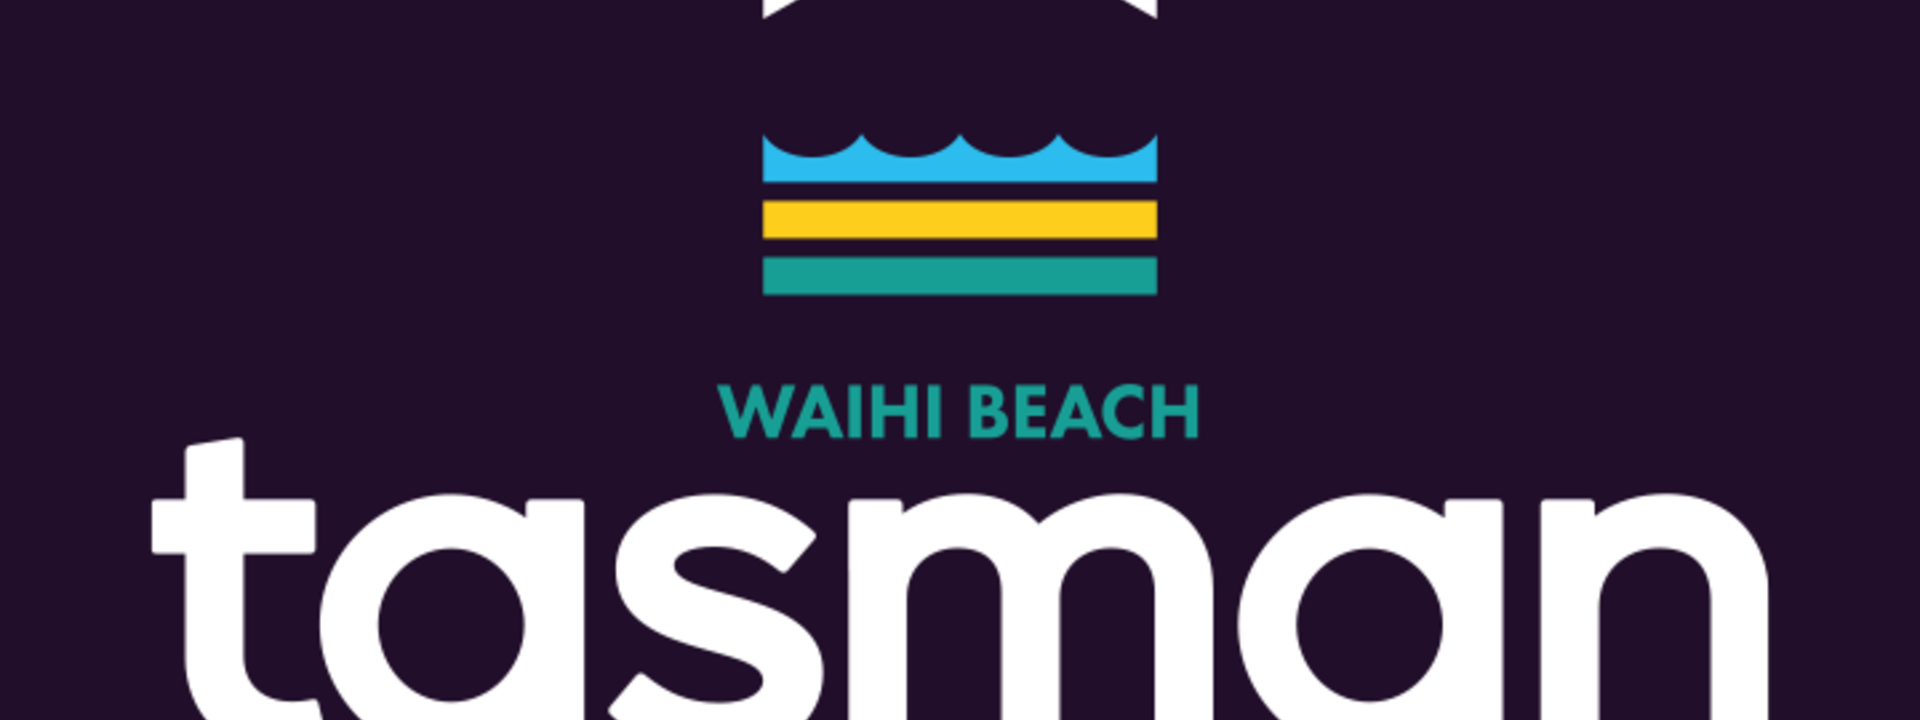 Waihi Beach.png